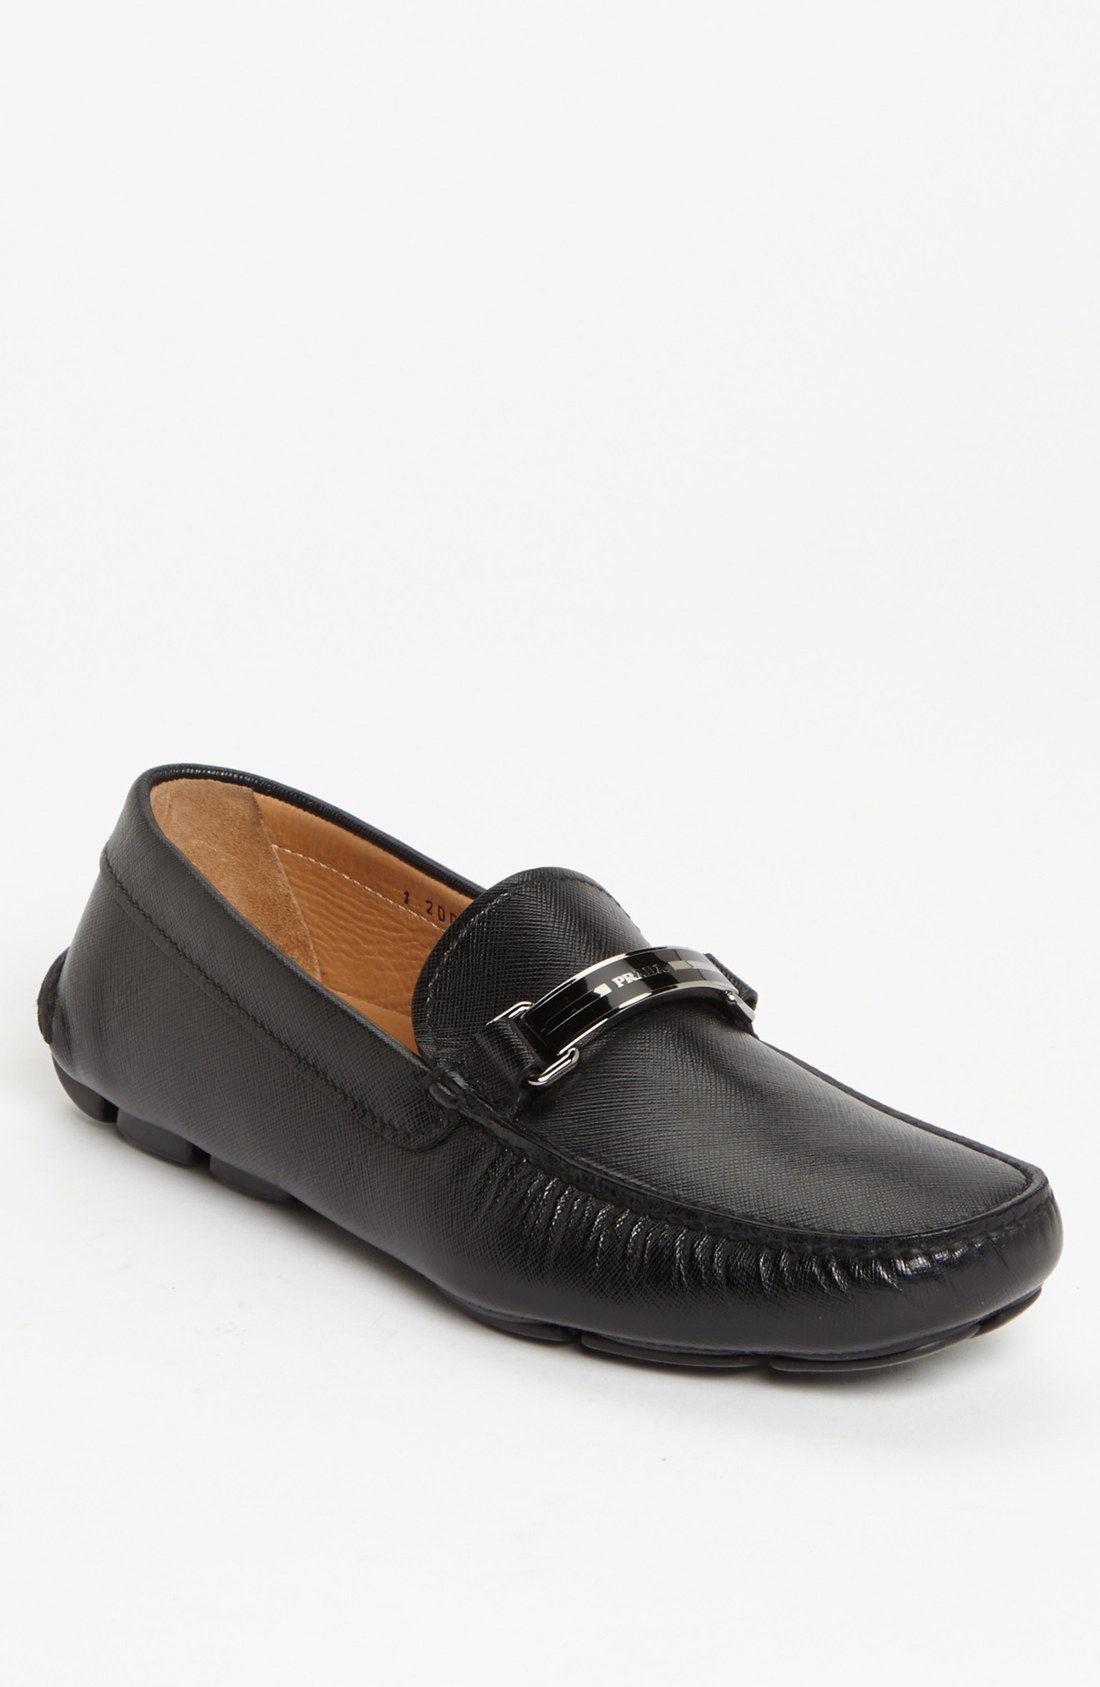 Prada Shoes Black 10